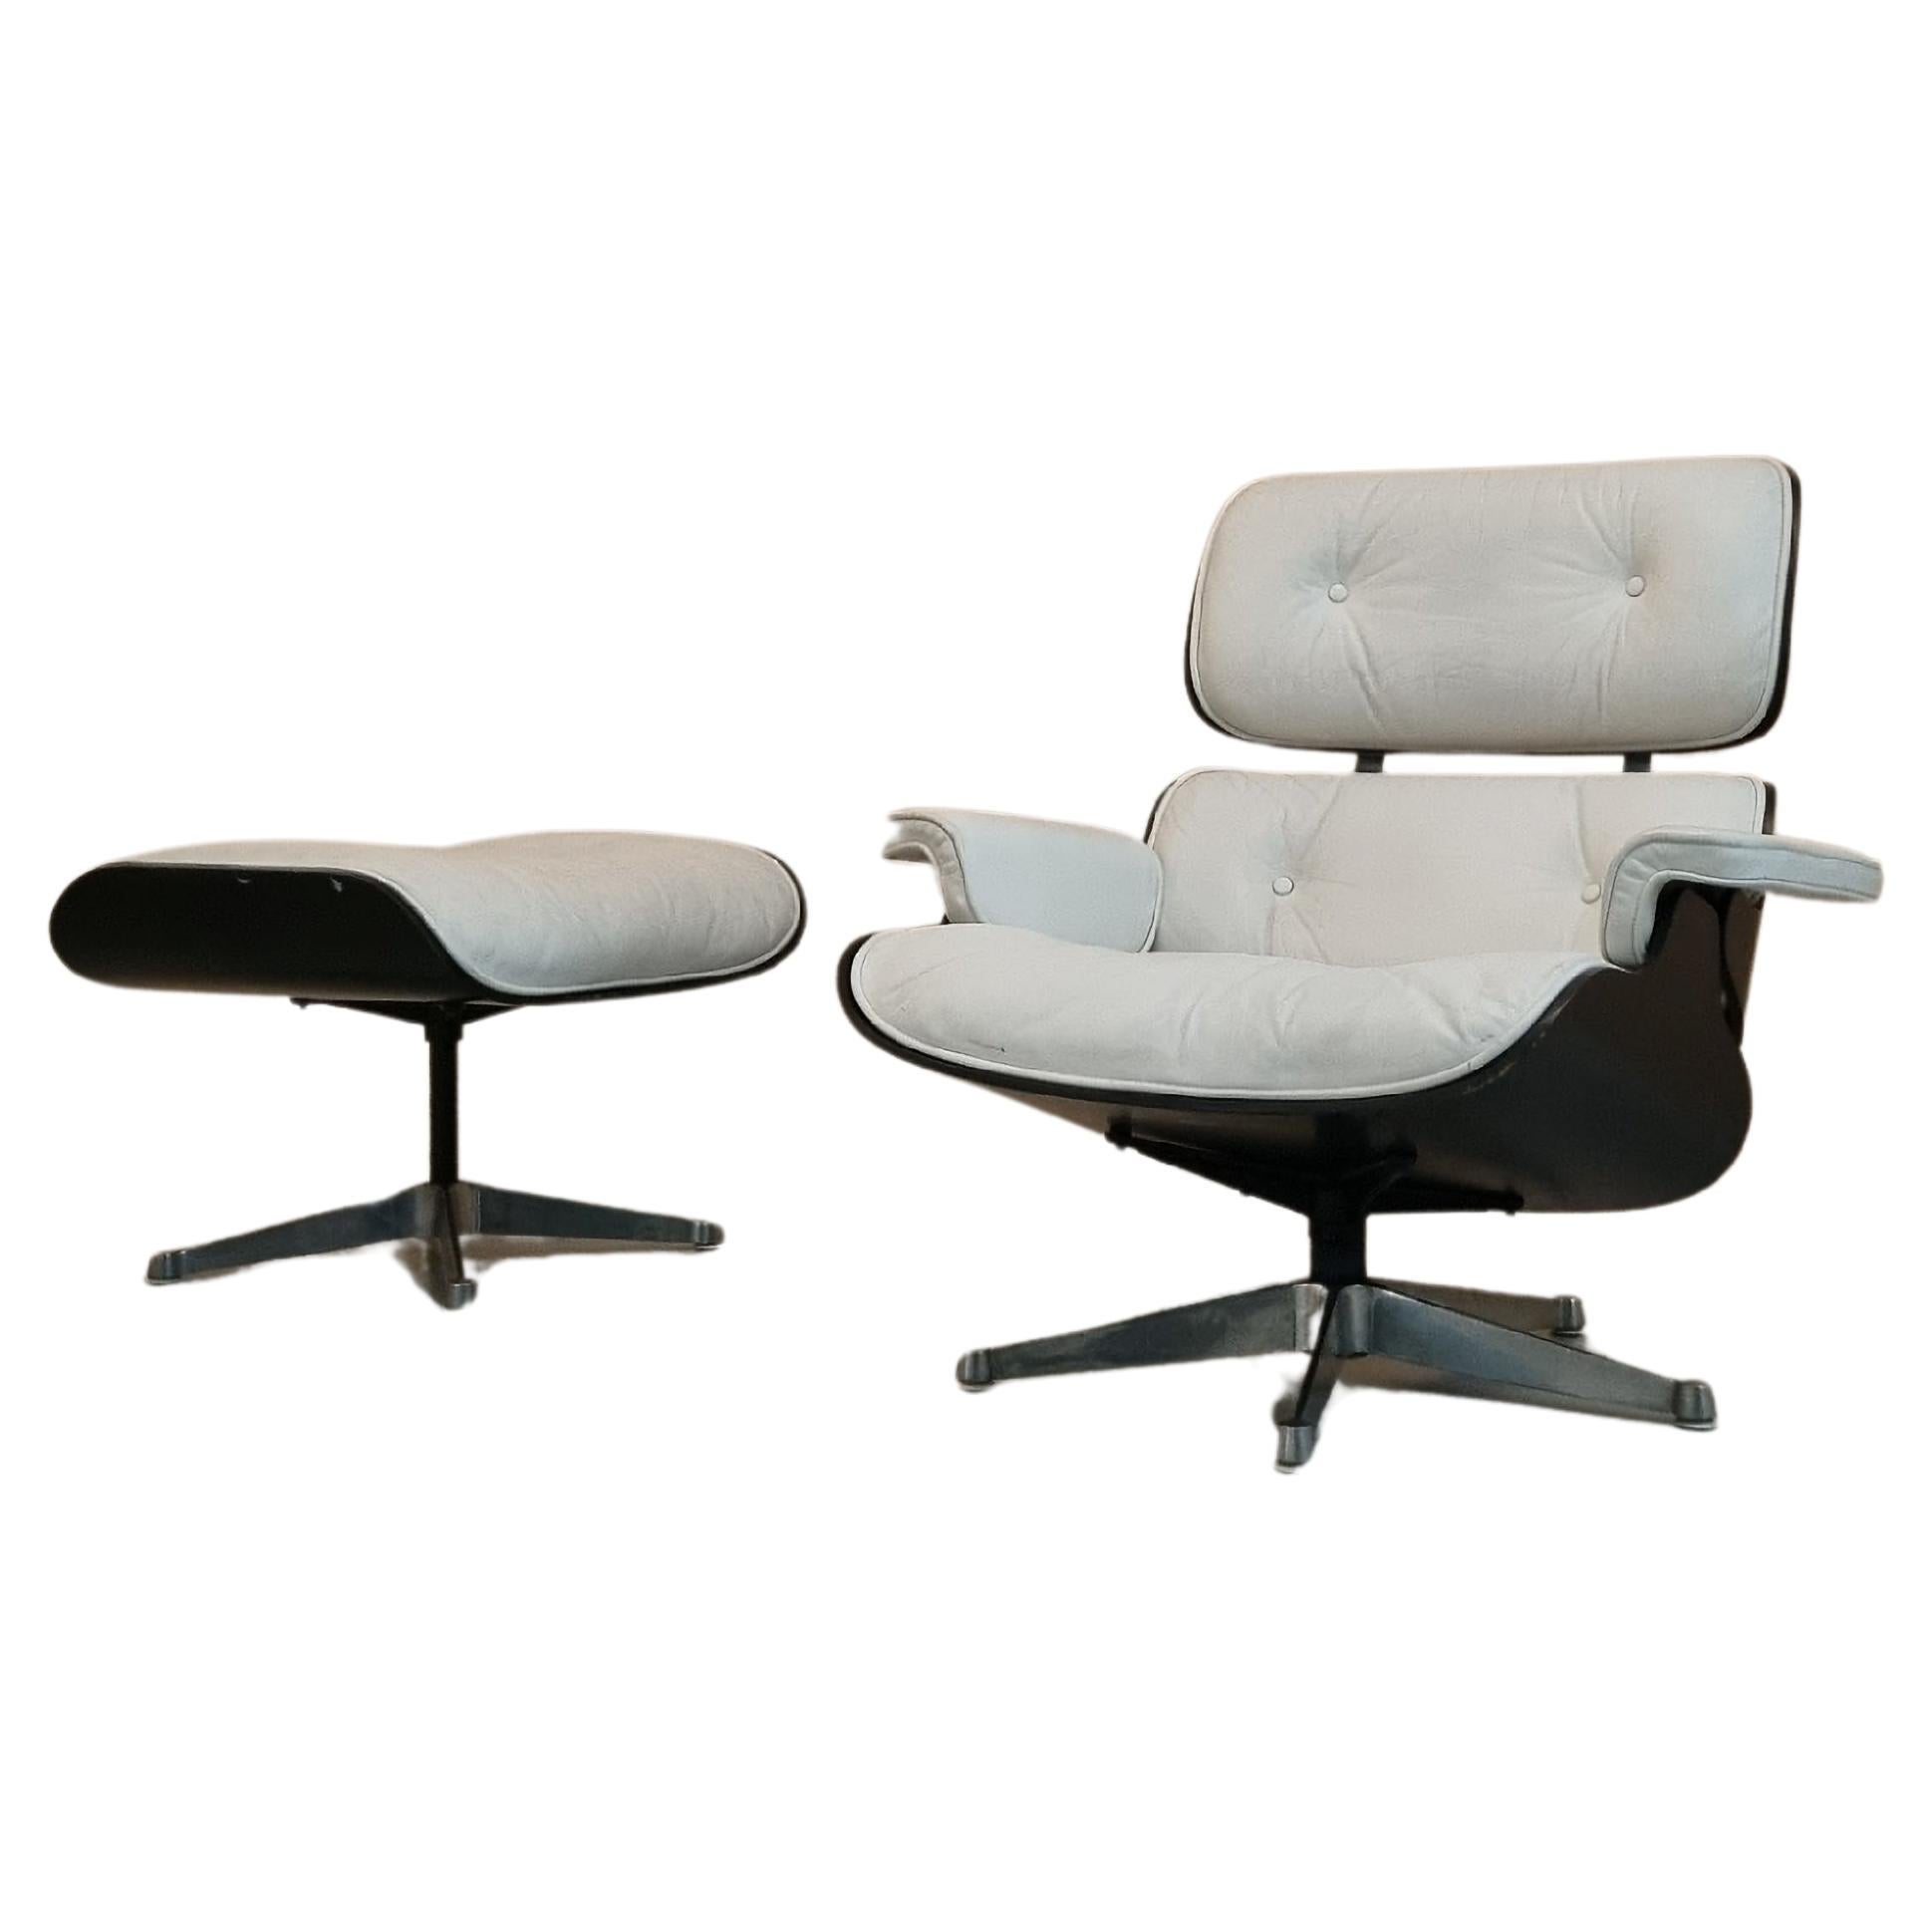 Eames 670 Lounge Chair und 671 Ottomane, entworfen von Charles und Ray Eames für ICF